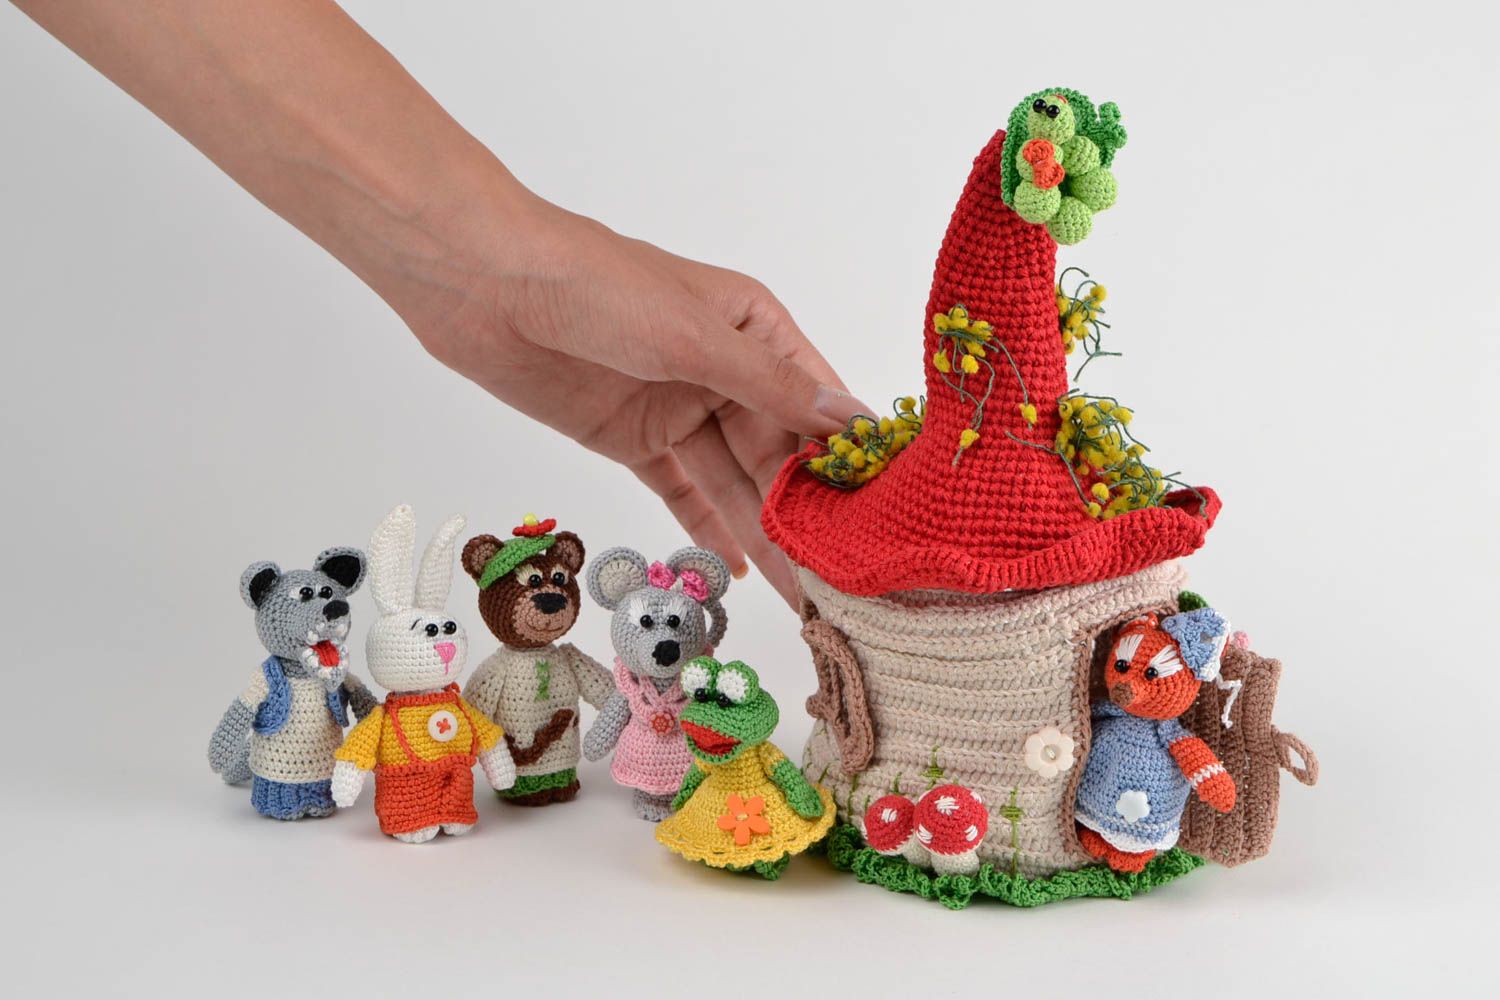 Juguetes de peluche artesanales animalitos tejidos a crochet regalos para niños foto 2